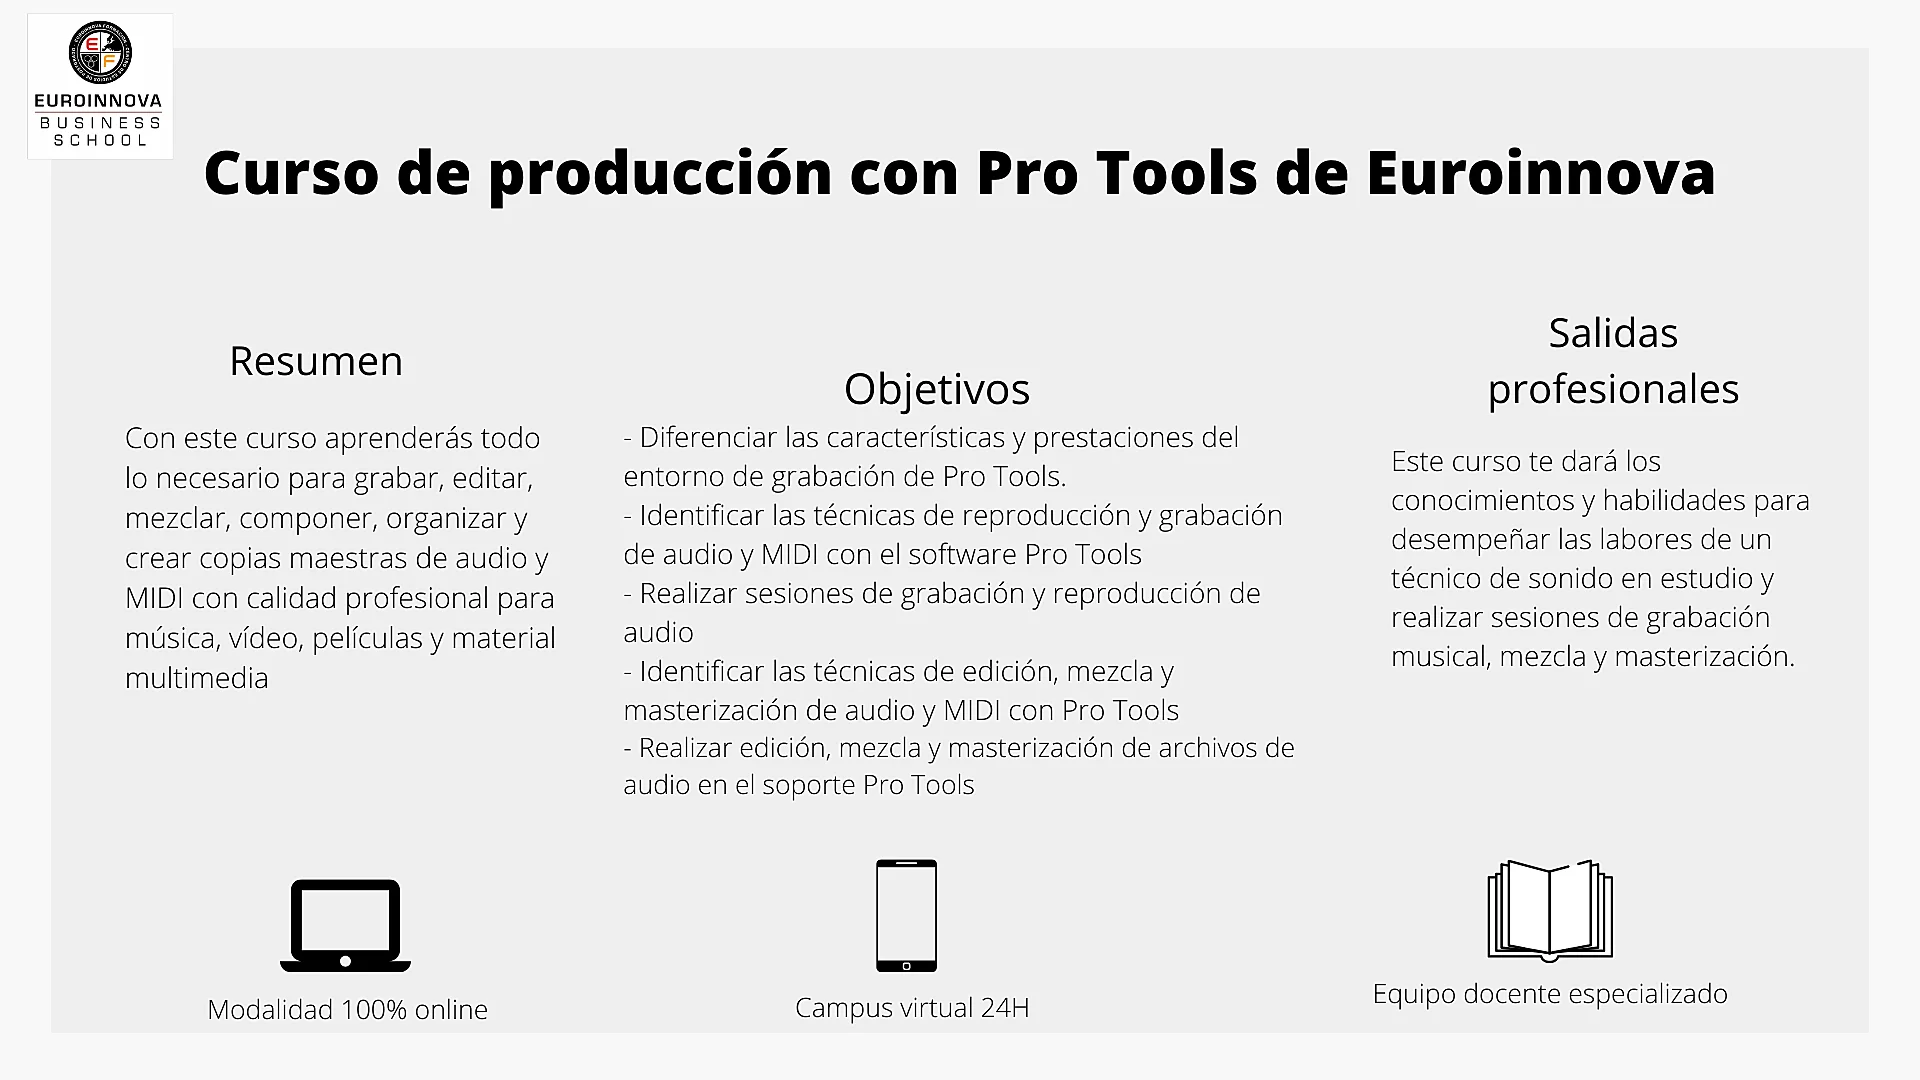 Guida all'uso di Pro Tools